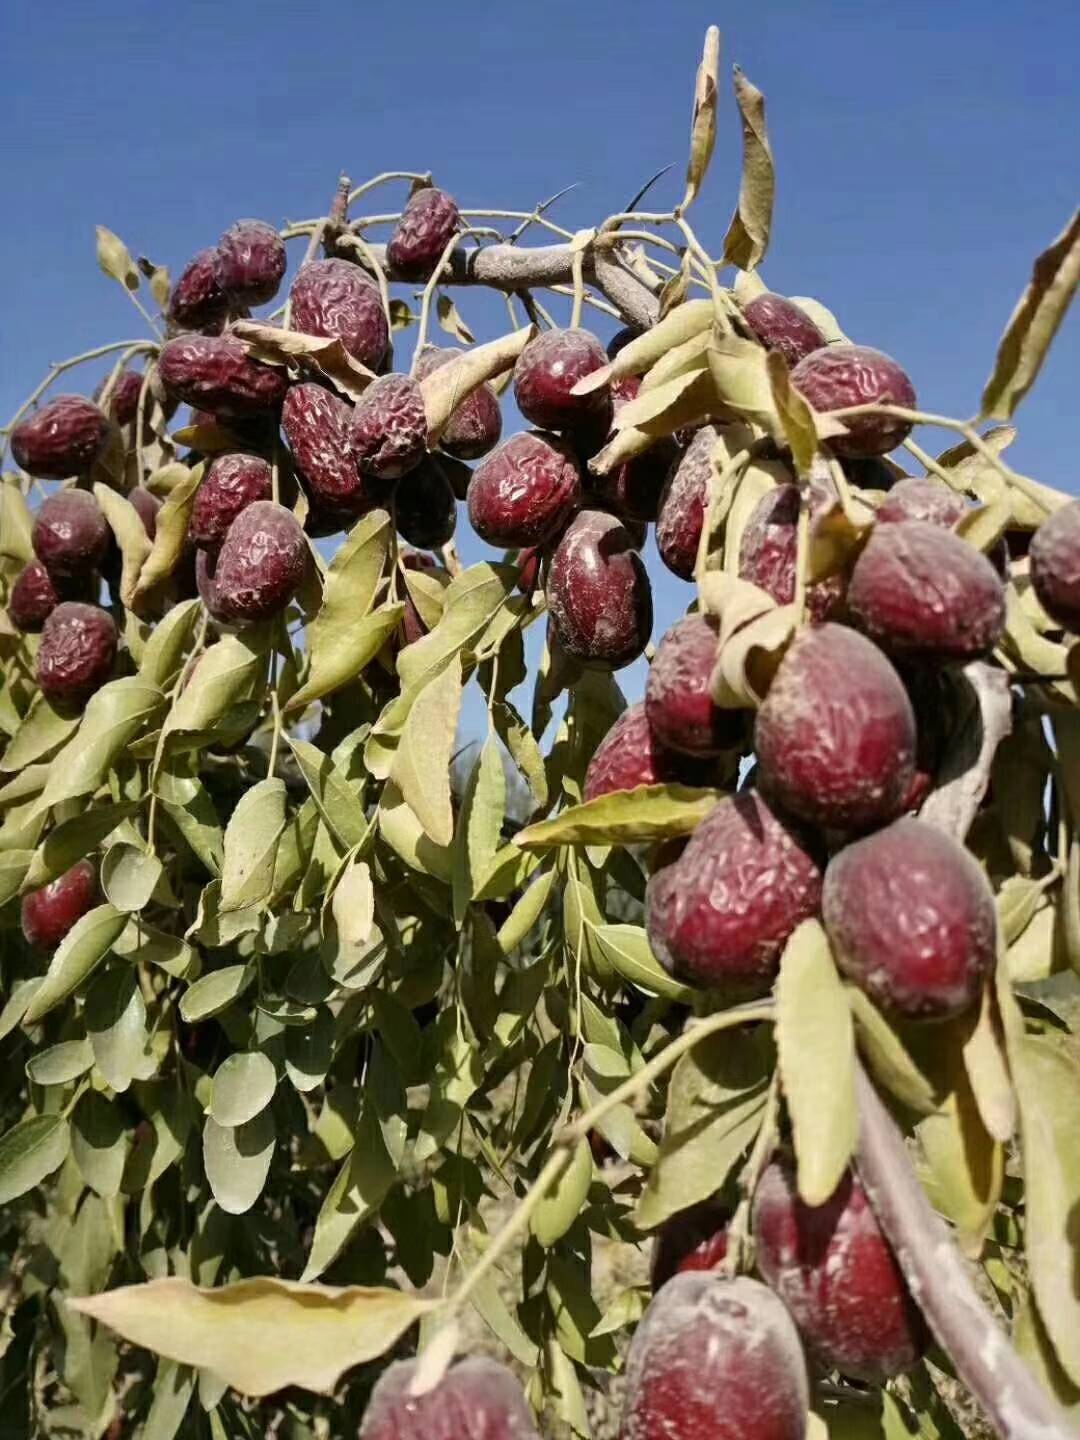 新疆红枣供应，安箱子发货的，有特级，一级，二级的品种，需要的可以联系吧，15769030259